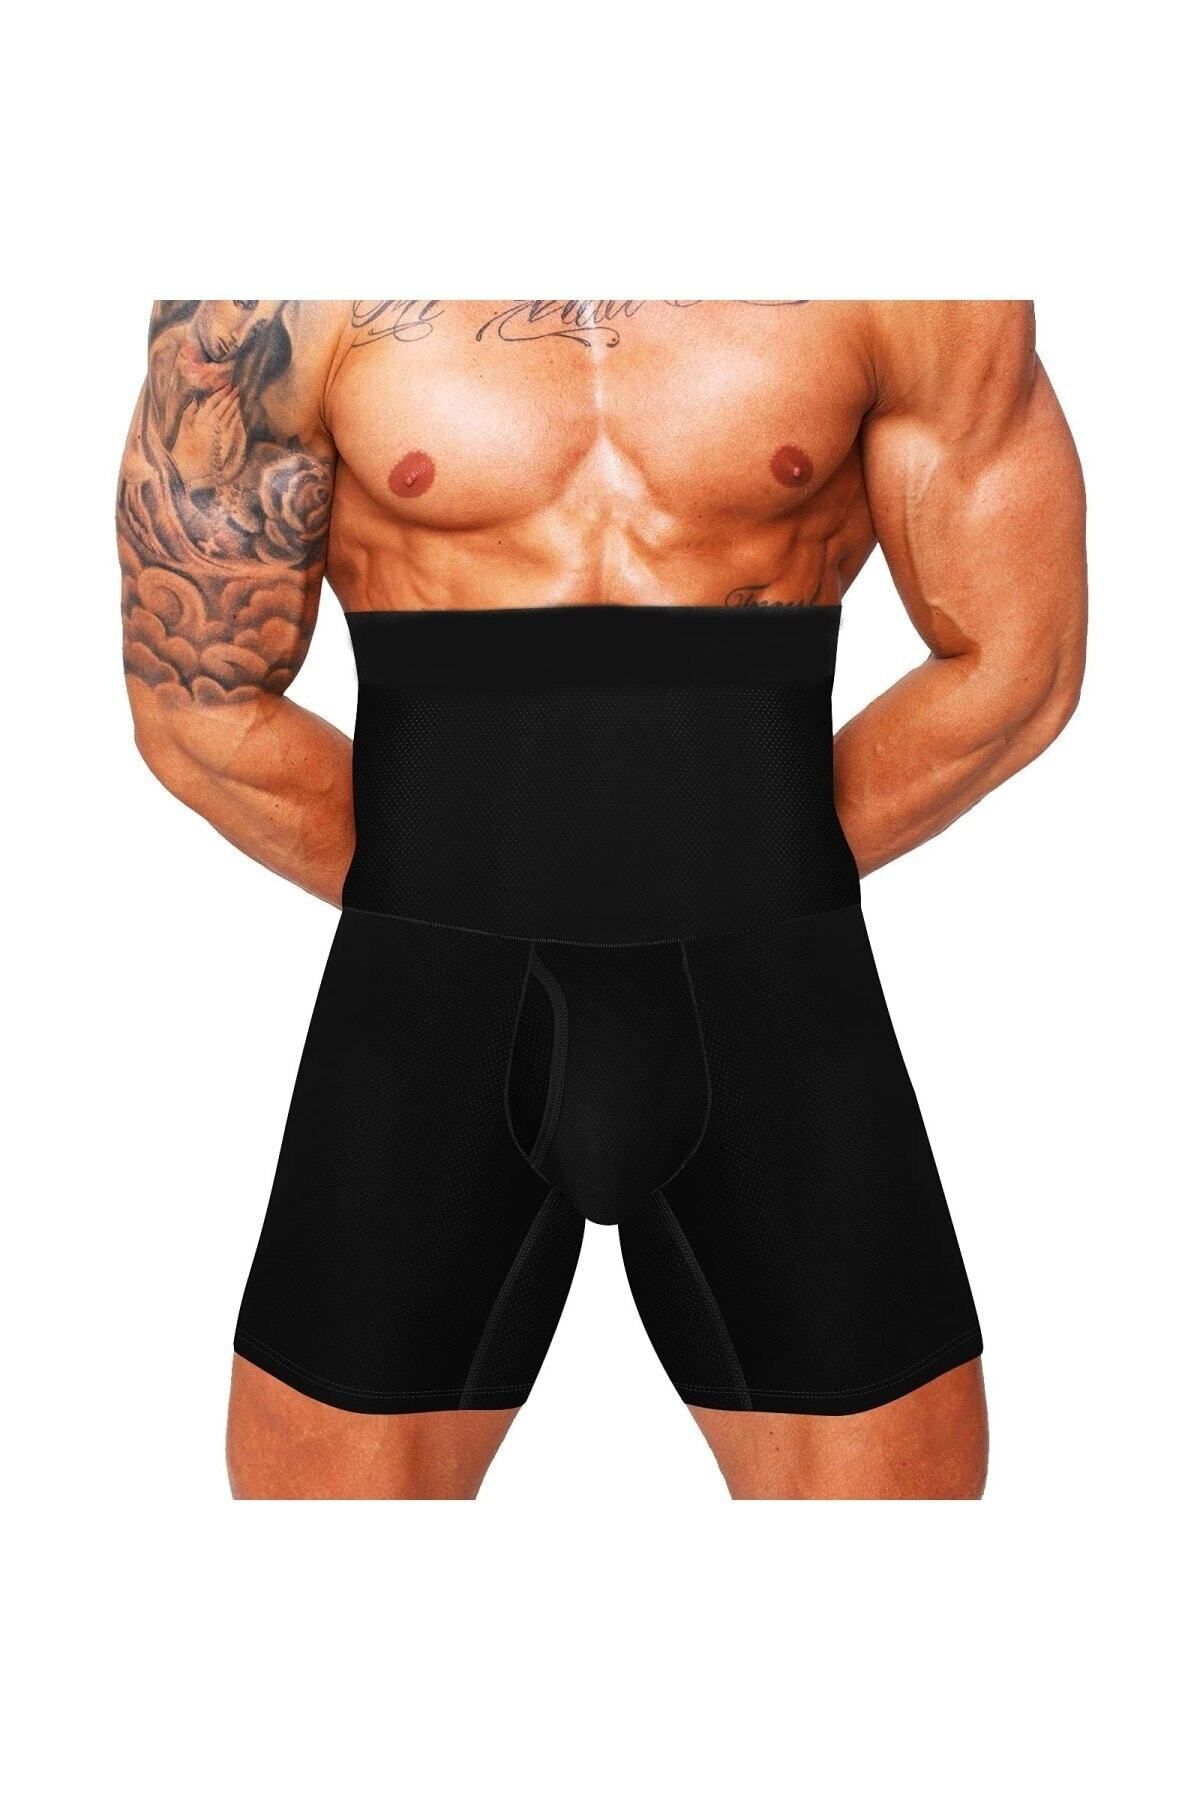 Nikadu Danni Model Bel Ve Göbek Eritici Düzleştirici Spor Korse Boxer Karın Gizleyen Boxer Siyah Renk